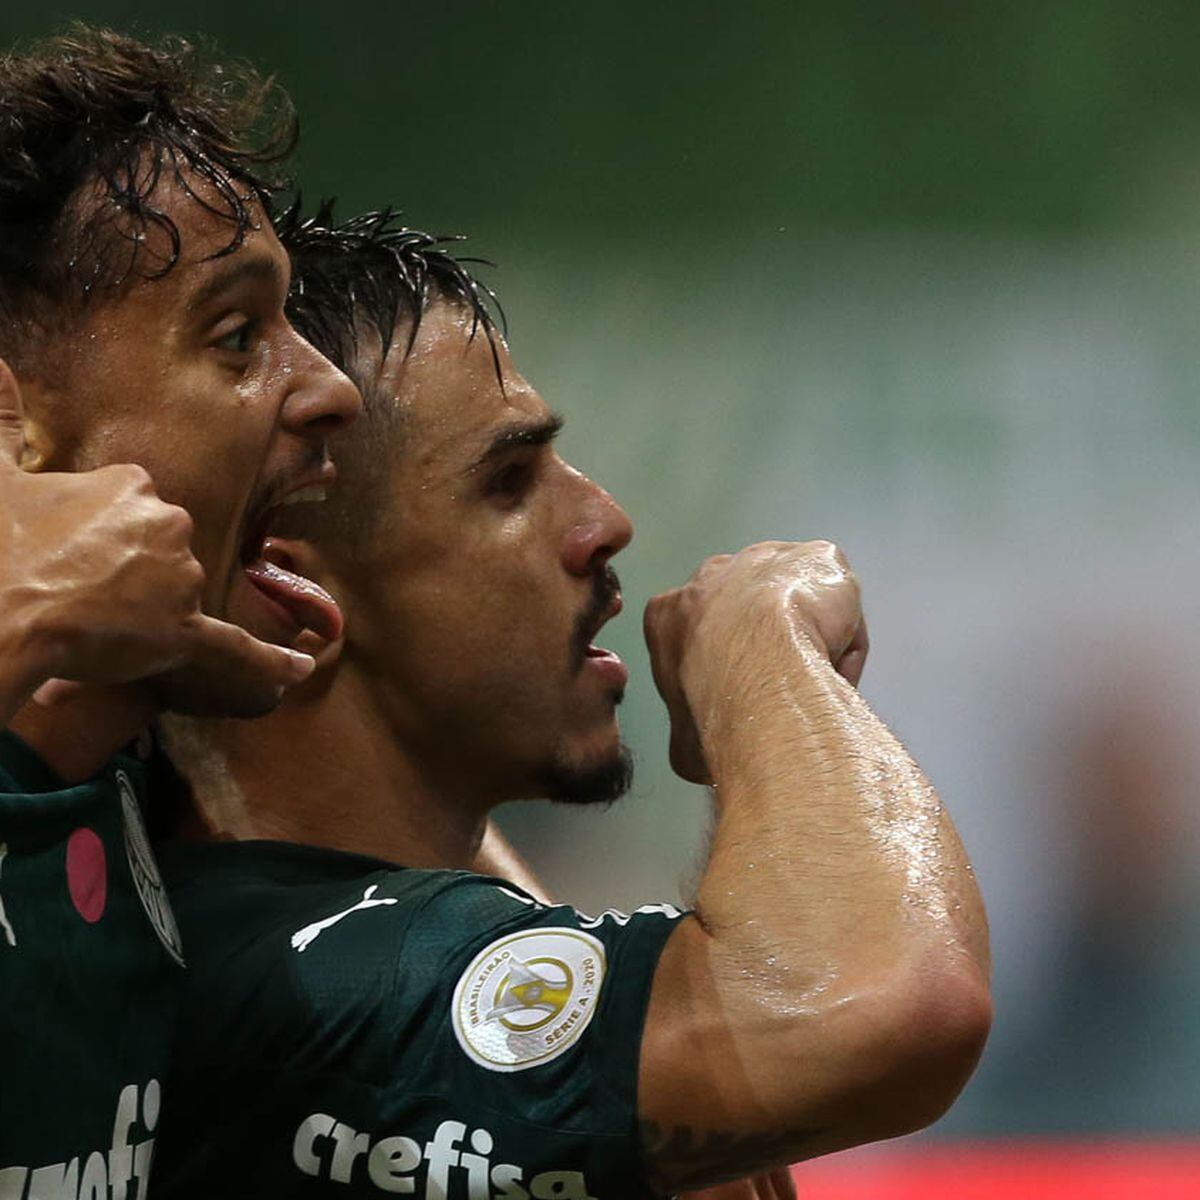 Jogadores do Palmeiras processam ex-companheiro após perdas com  criptomoedas